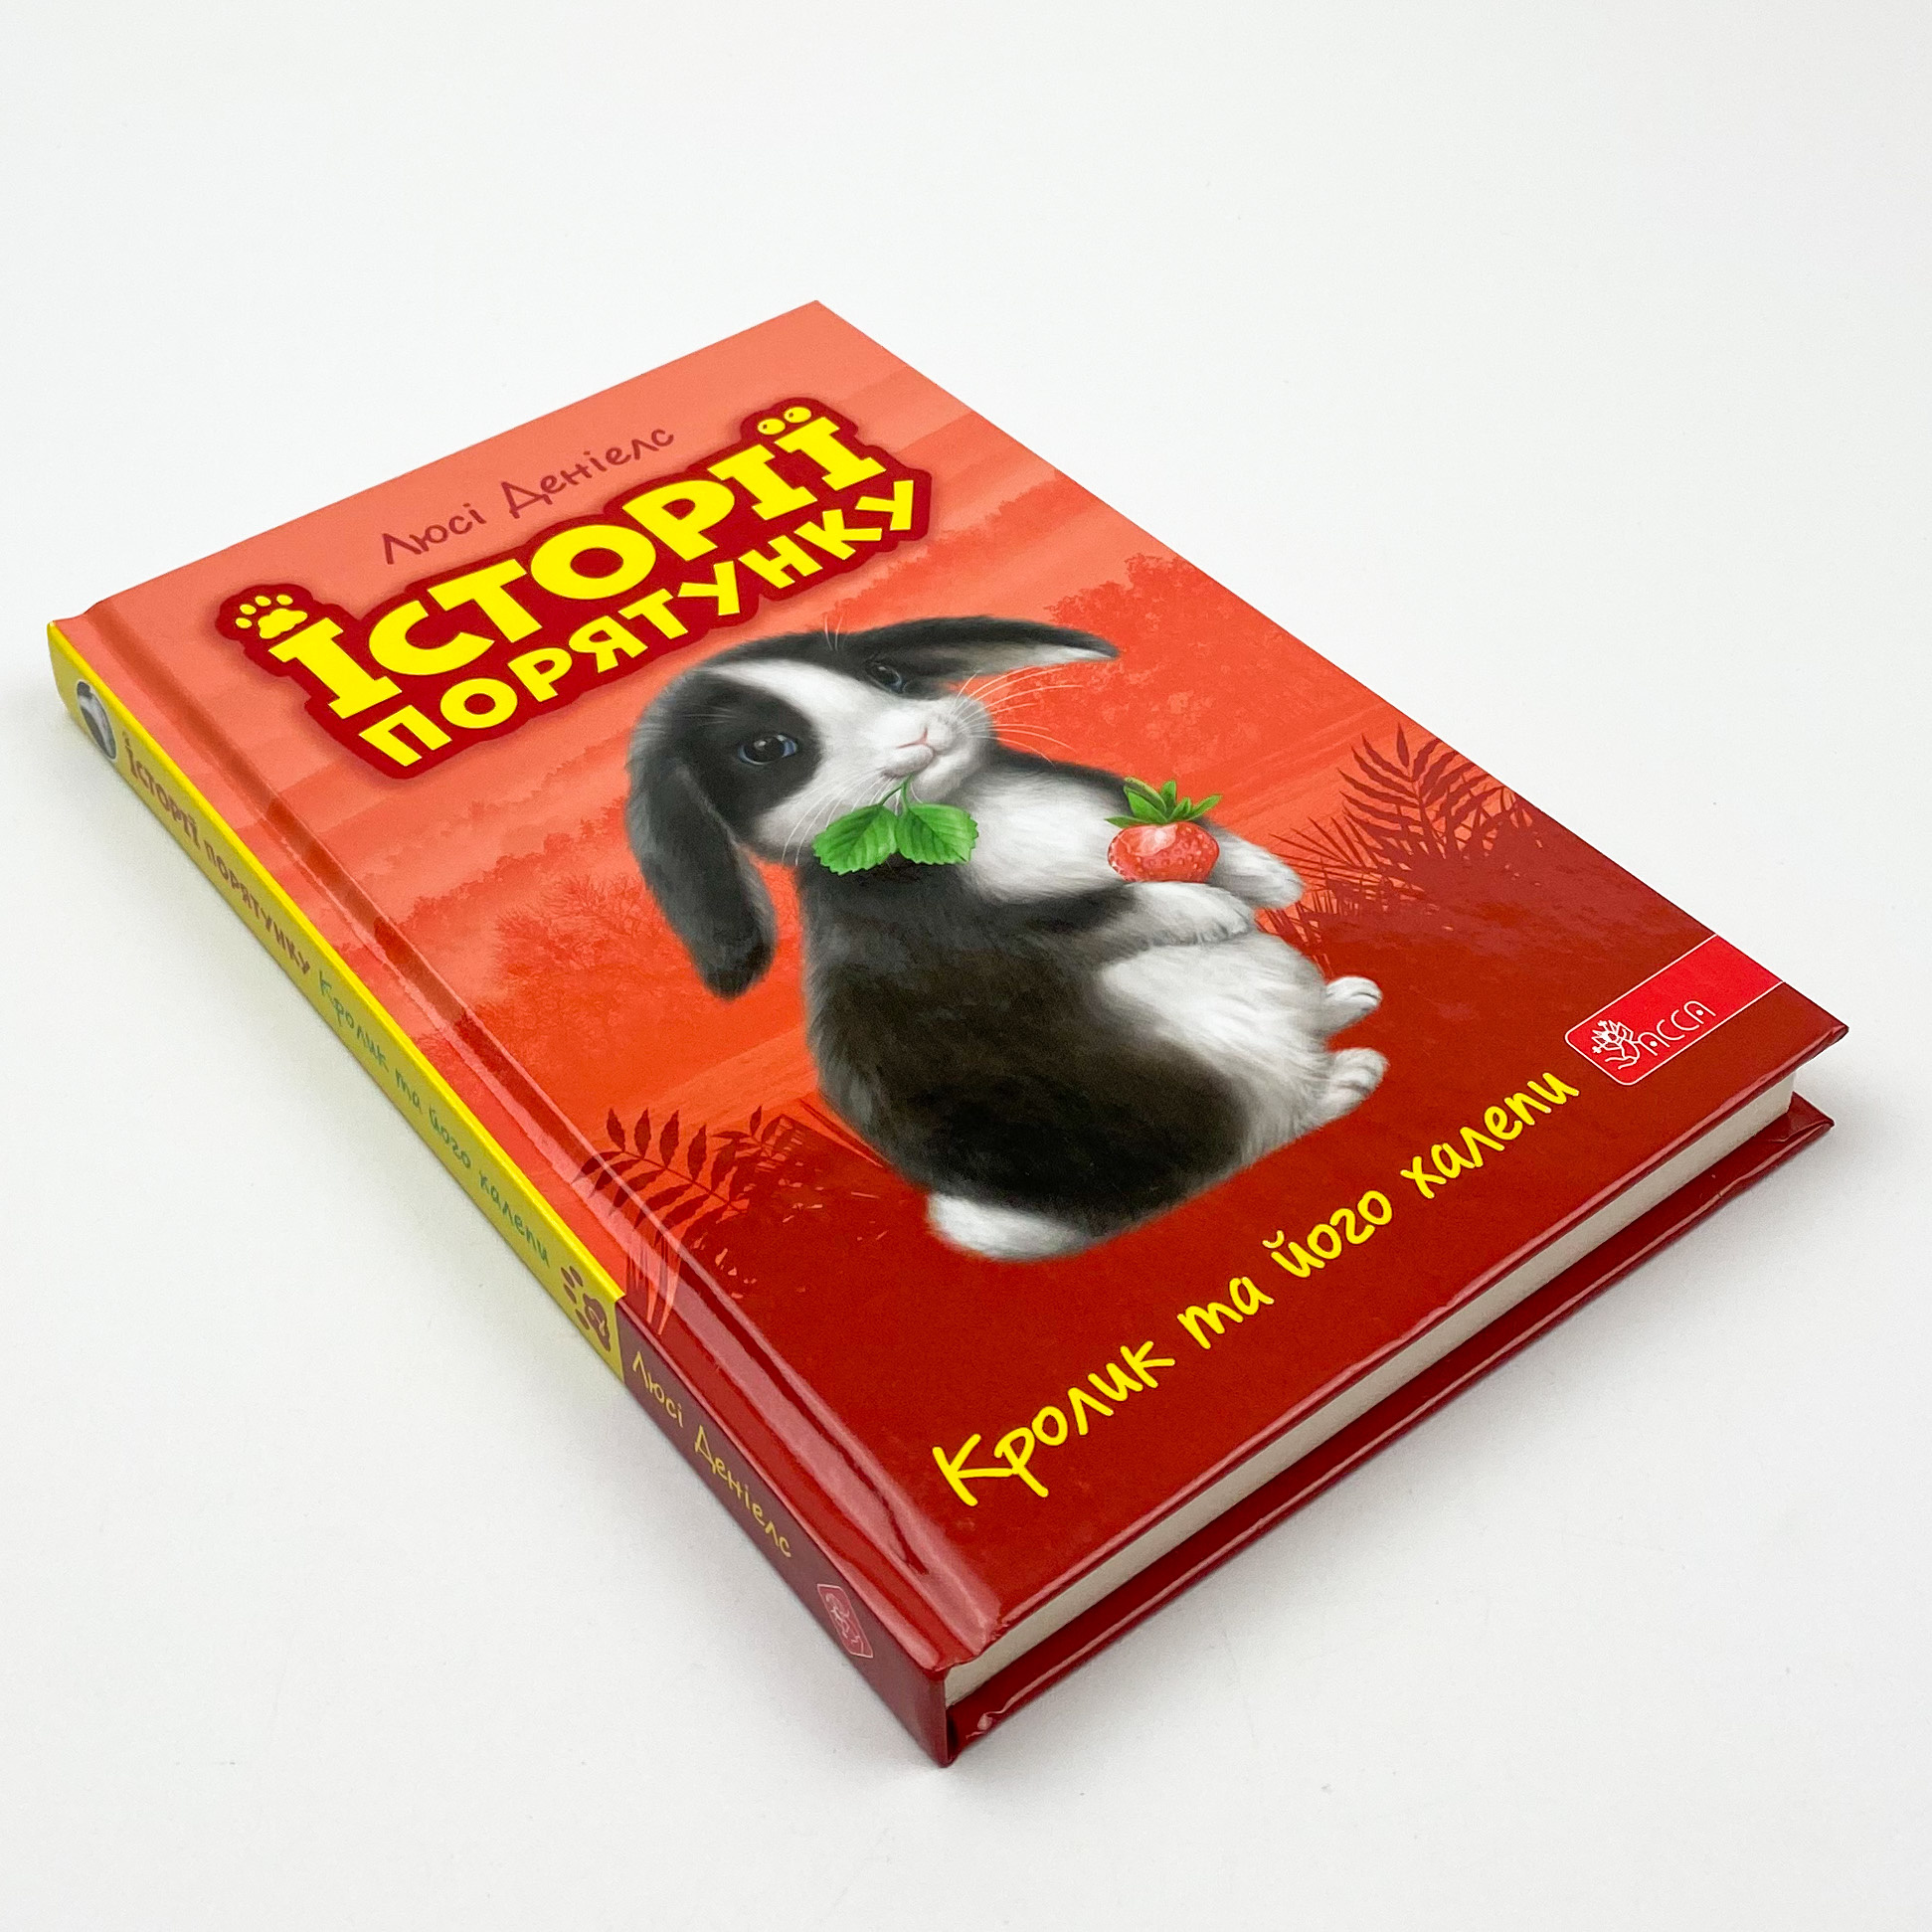 Історії порятунку. Книга 2. Кролик та його халепи. Автор — Люсі Деніелс. 